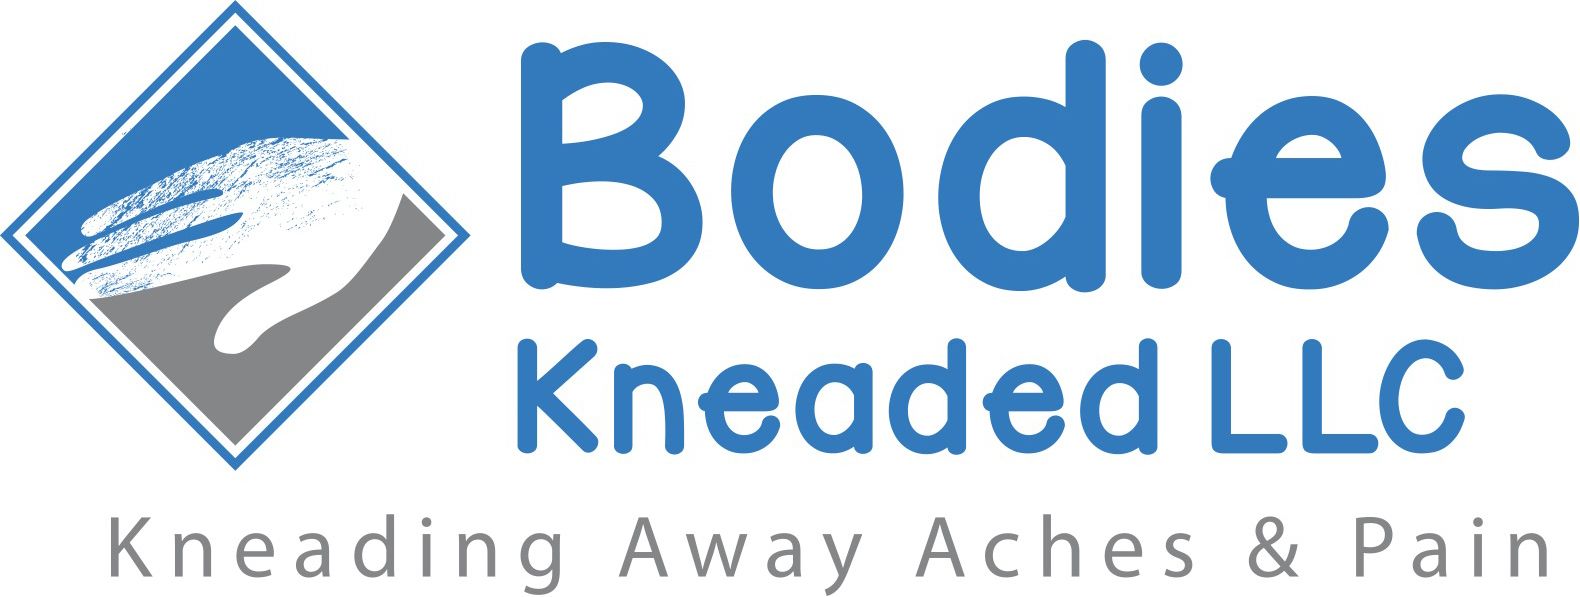 Bodies Kneaded - Logo